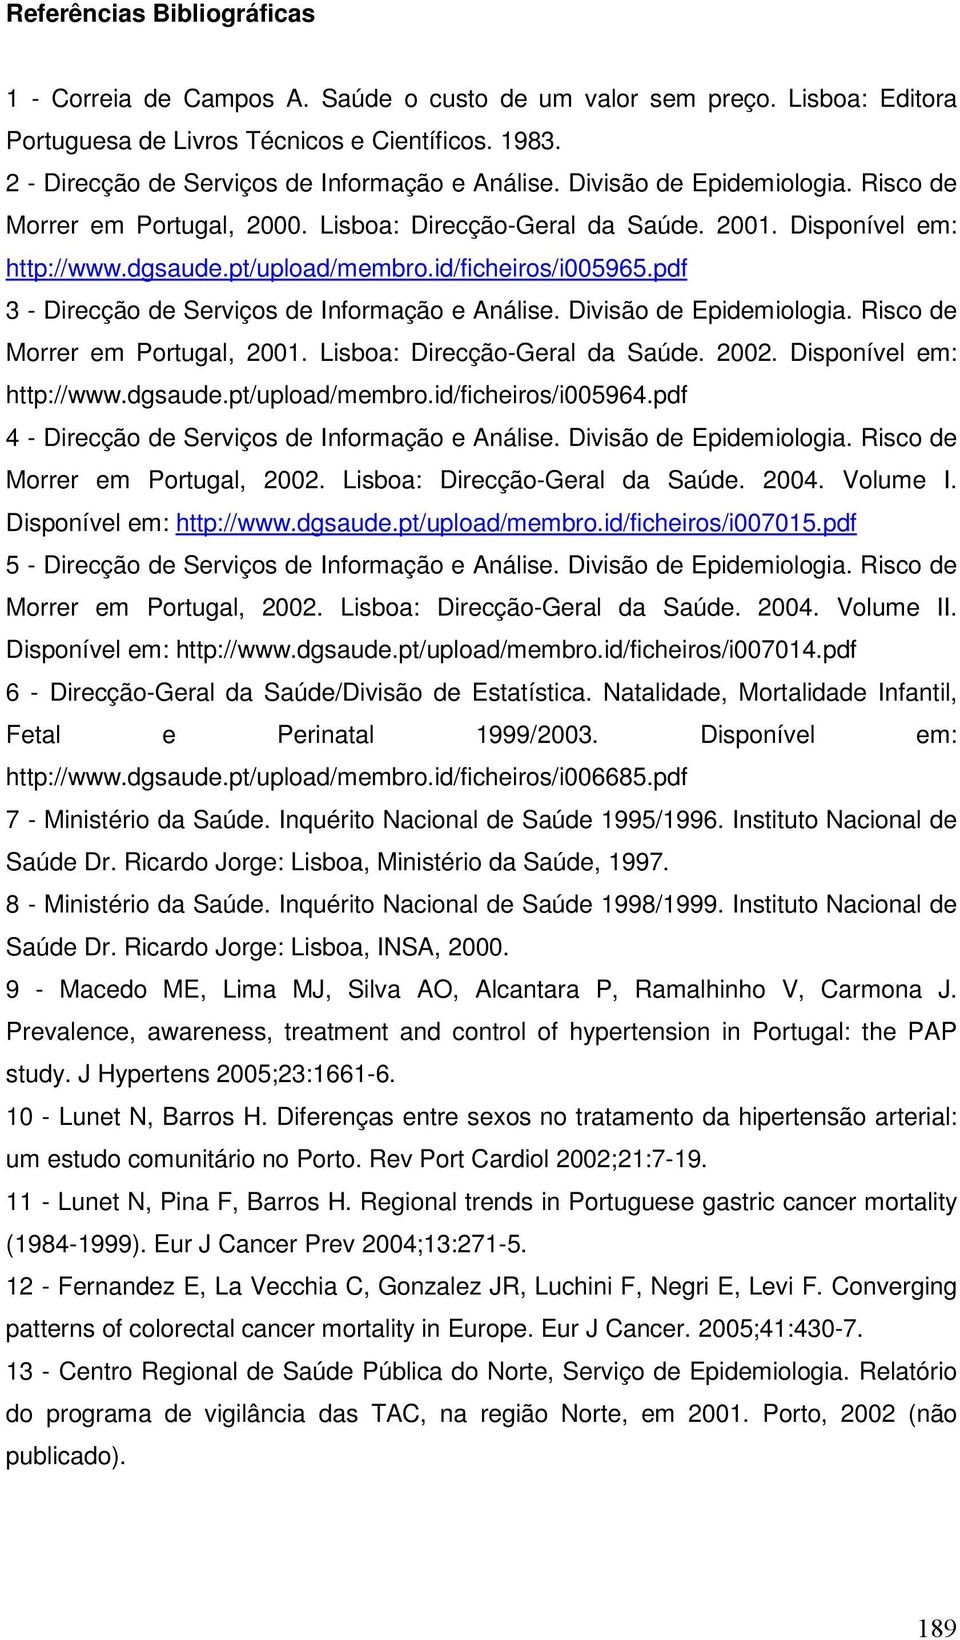 pt/upload/membro.id/ficheiros/i005965.pdf 3 - Direcção de Serviços de Informação e Análise. Divisão de Epidemiologia. Risco de Morrer em Portugal, 2001. Lisboa: Direcção-Geral da Saúde. 2002.